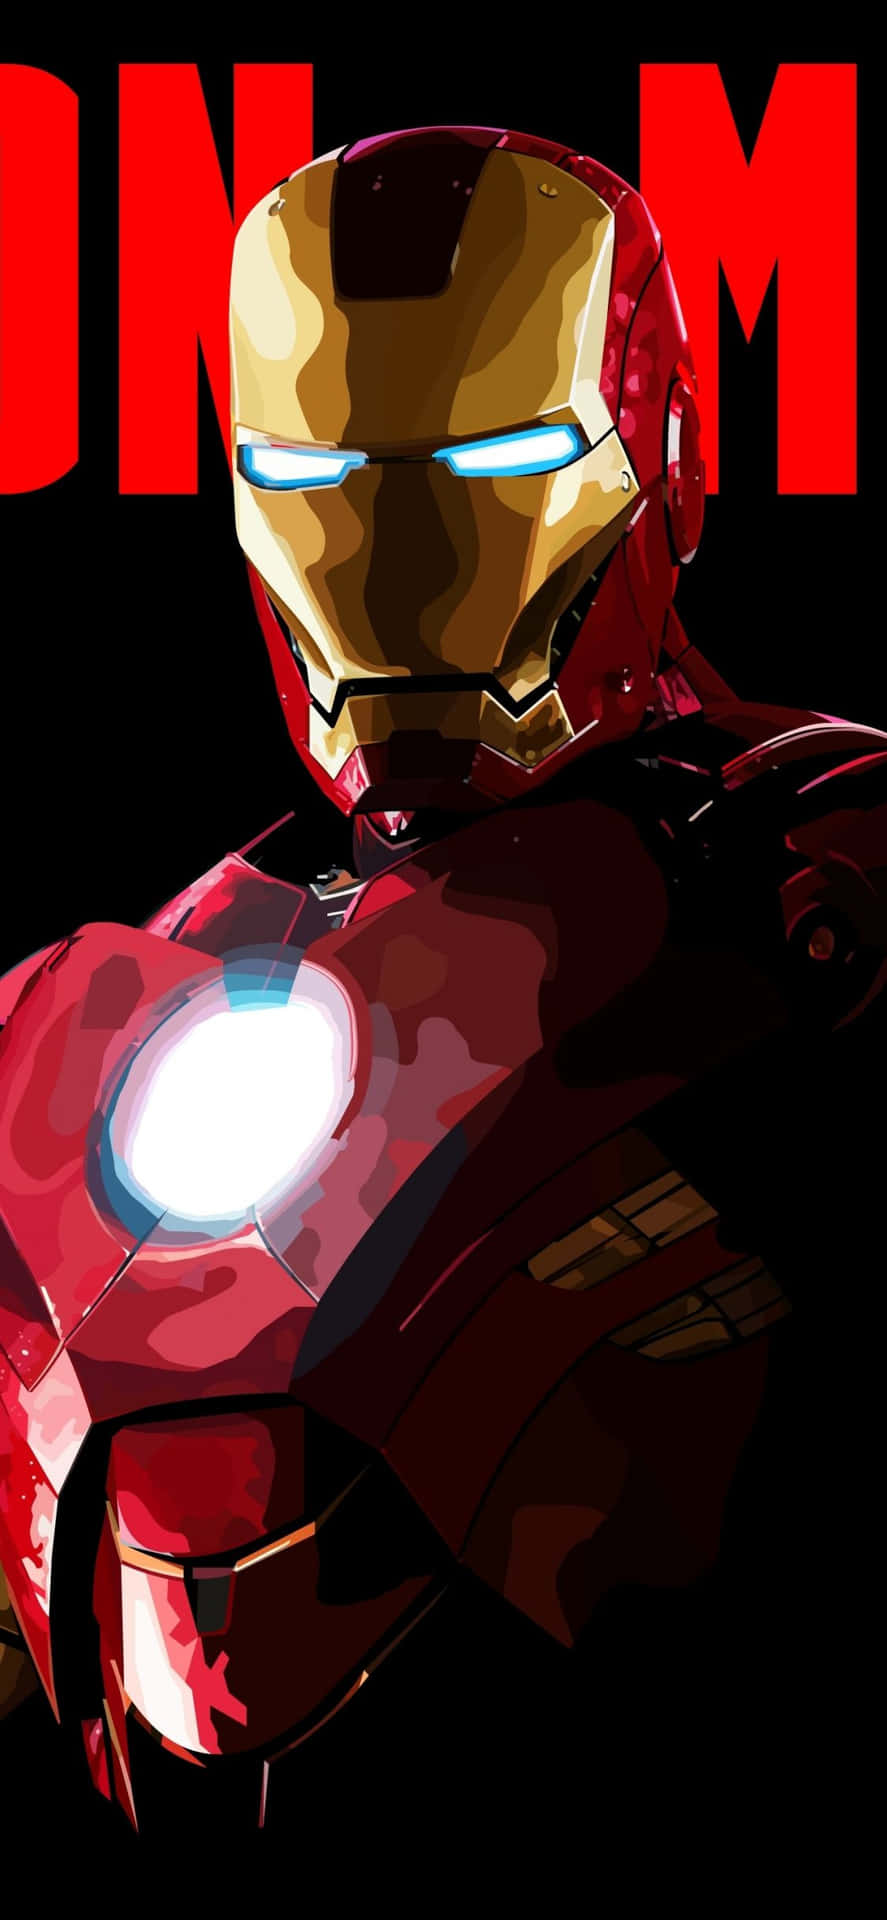 Verbessernsie Ihr Handy Mit Iron Man Iphone X. Wallpaper